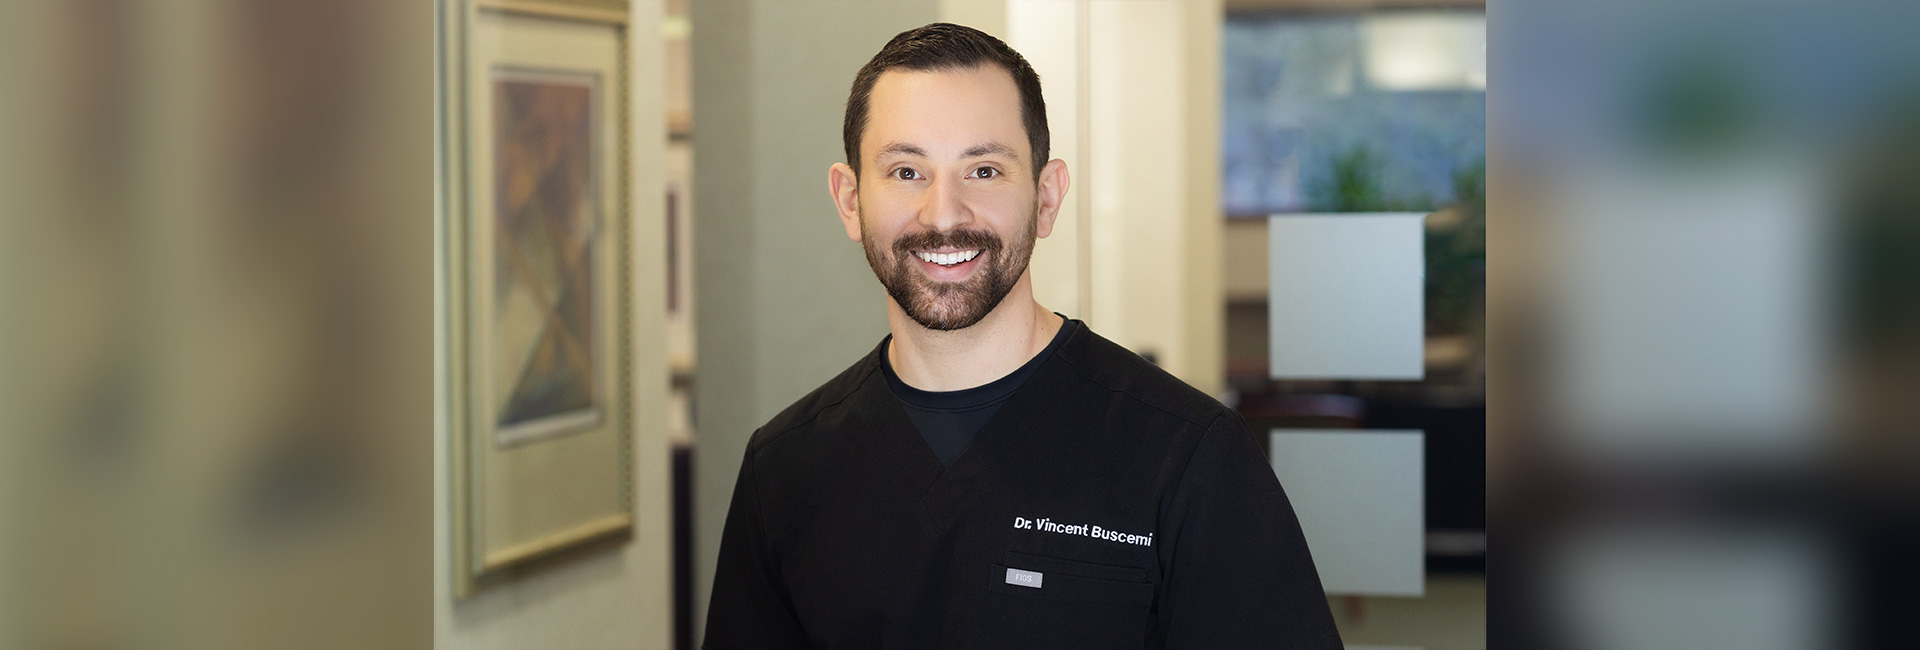 Meet Dr. Vincent Buscemi - Buscemi Family Dentistry, MI